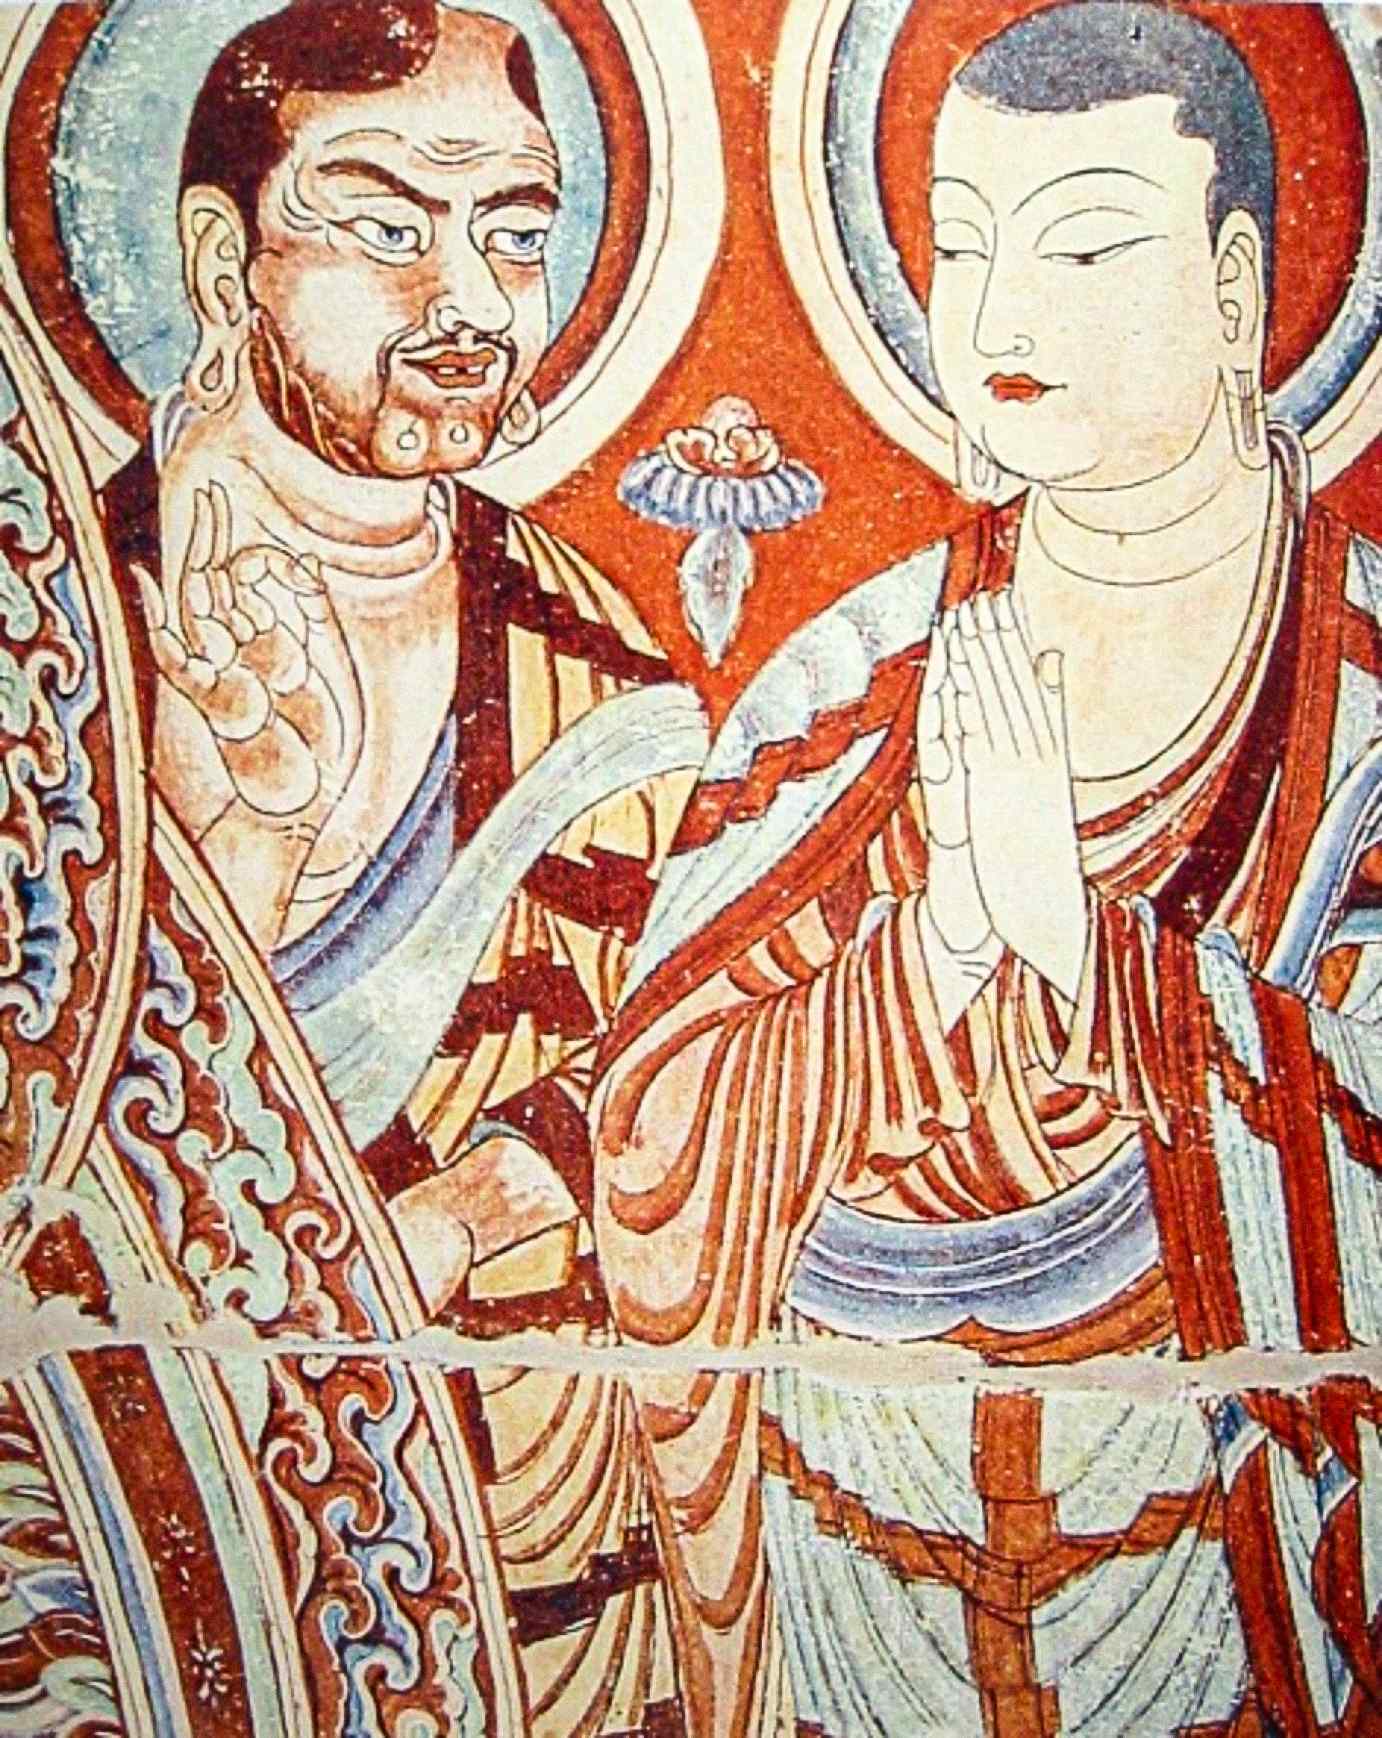 Een blanke Centraal-Aziatische monnik, mogelijk een Indo-Europese Sogdiër of Tochaar, geeft les aan een Oost-Aziatische monnik, misschien een Turkse Oeigoerse of Chinees, op een 9e-eeuws fresco van de Bezeklik Thousand Buddha Caves in de buurt van Turfan, Xinjiang, China.